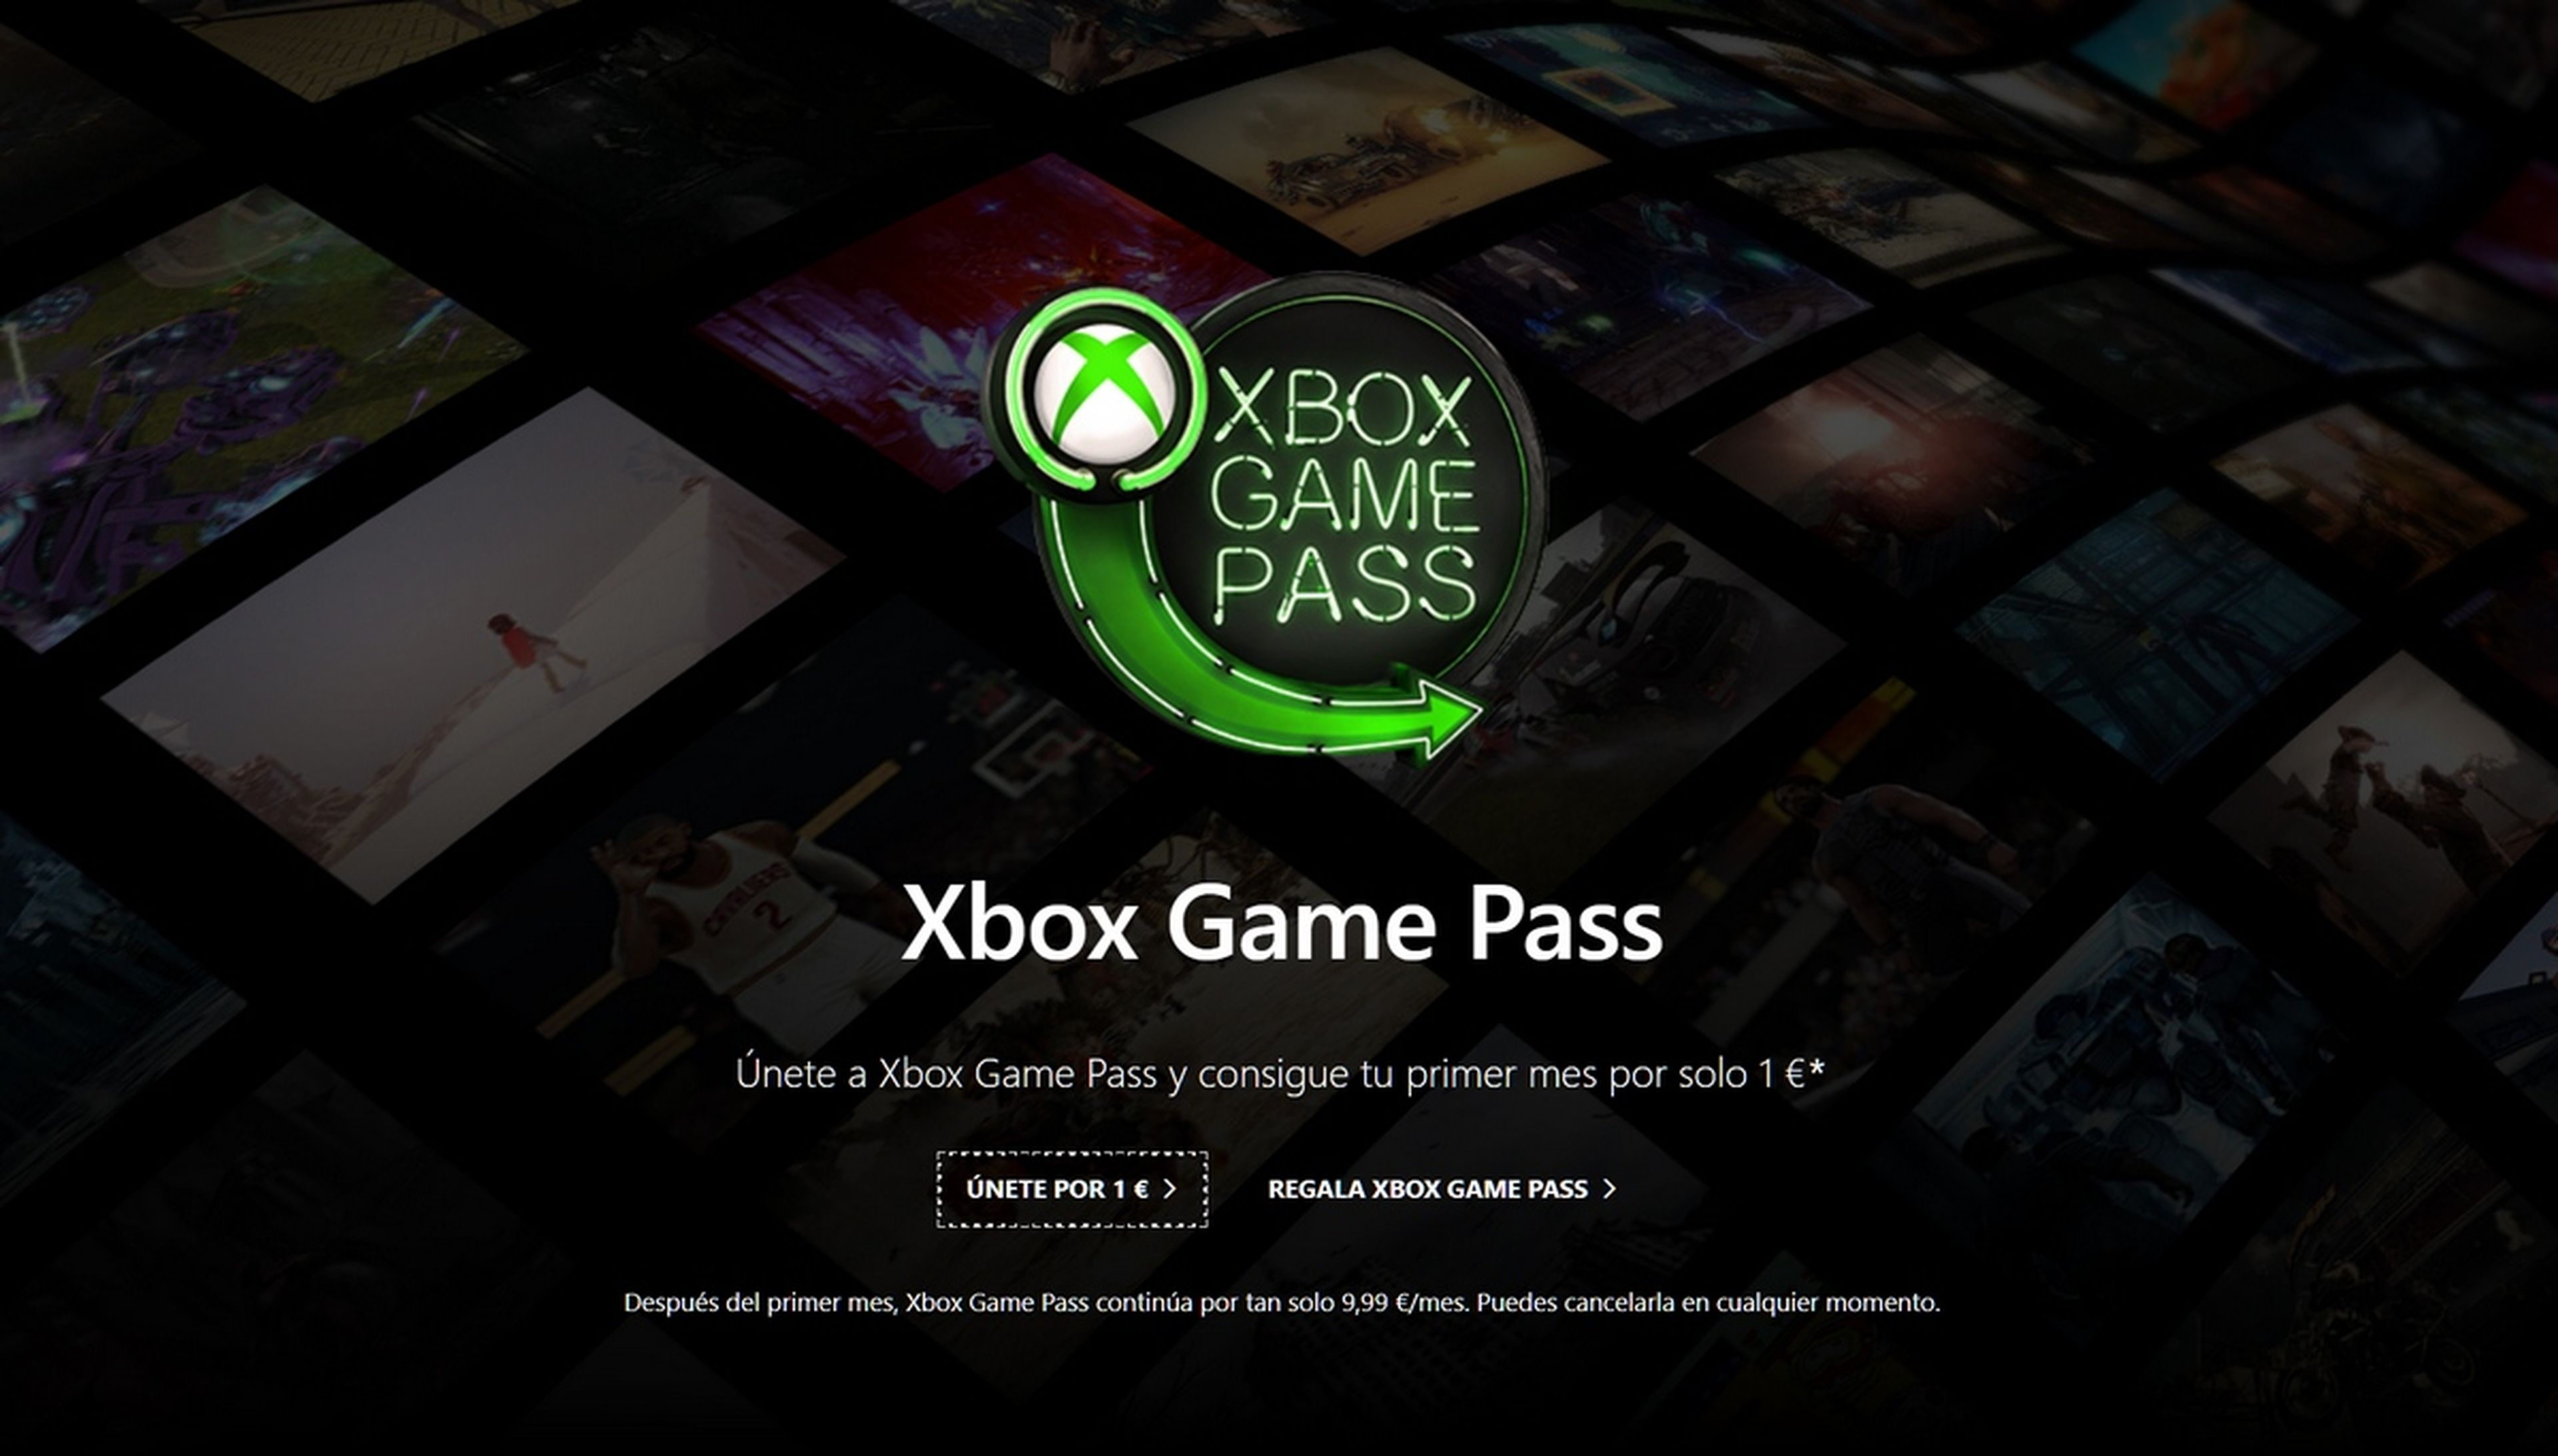 Xbox Game Pass en promoción, solo cuesta 1 euro el primer mes